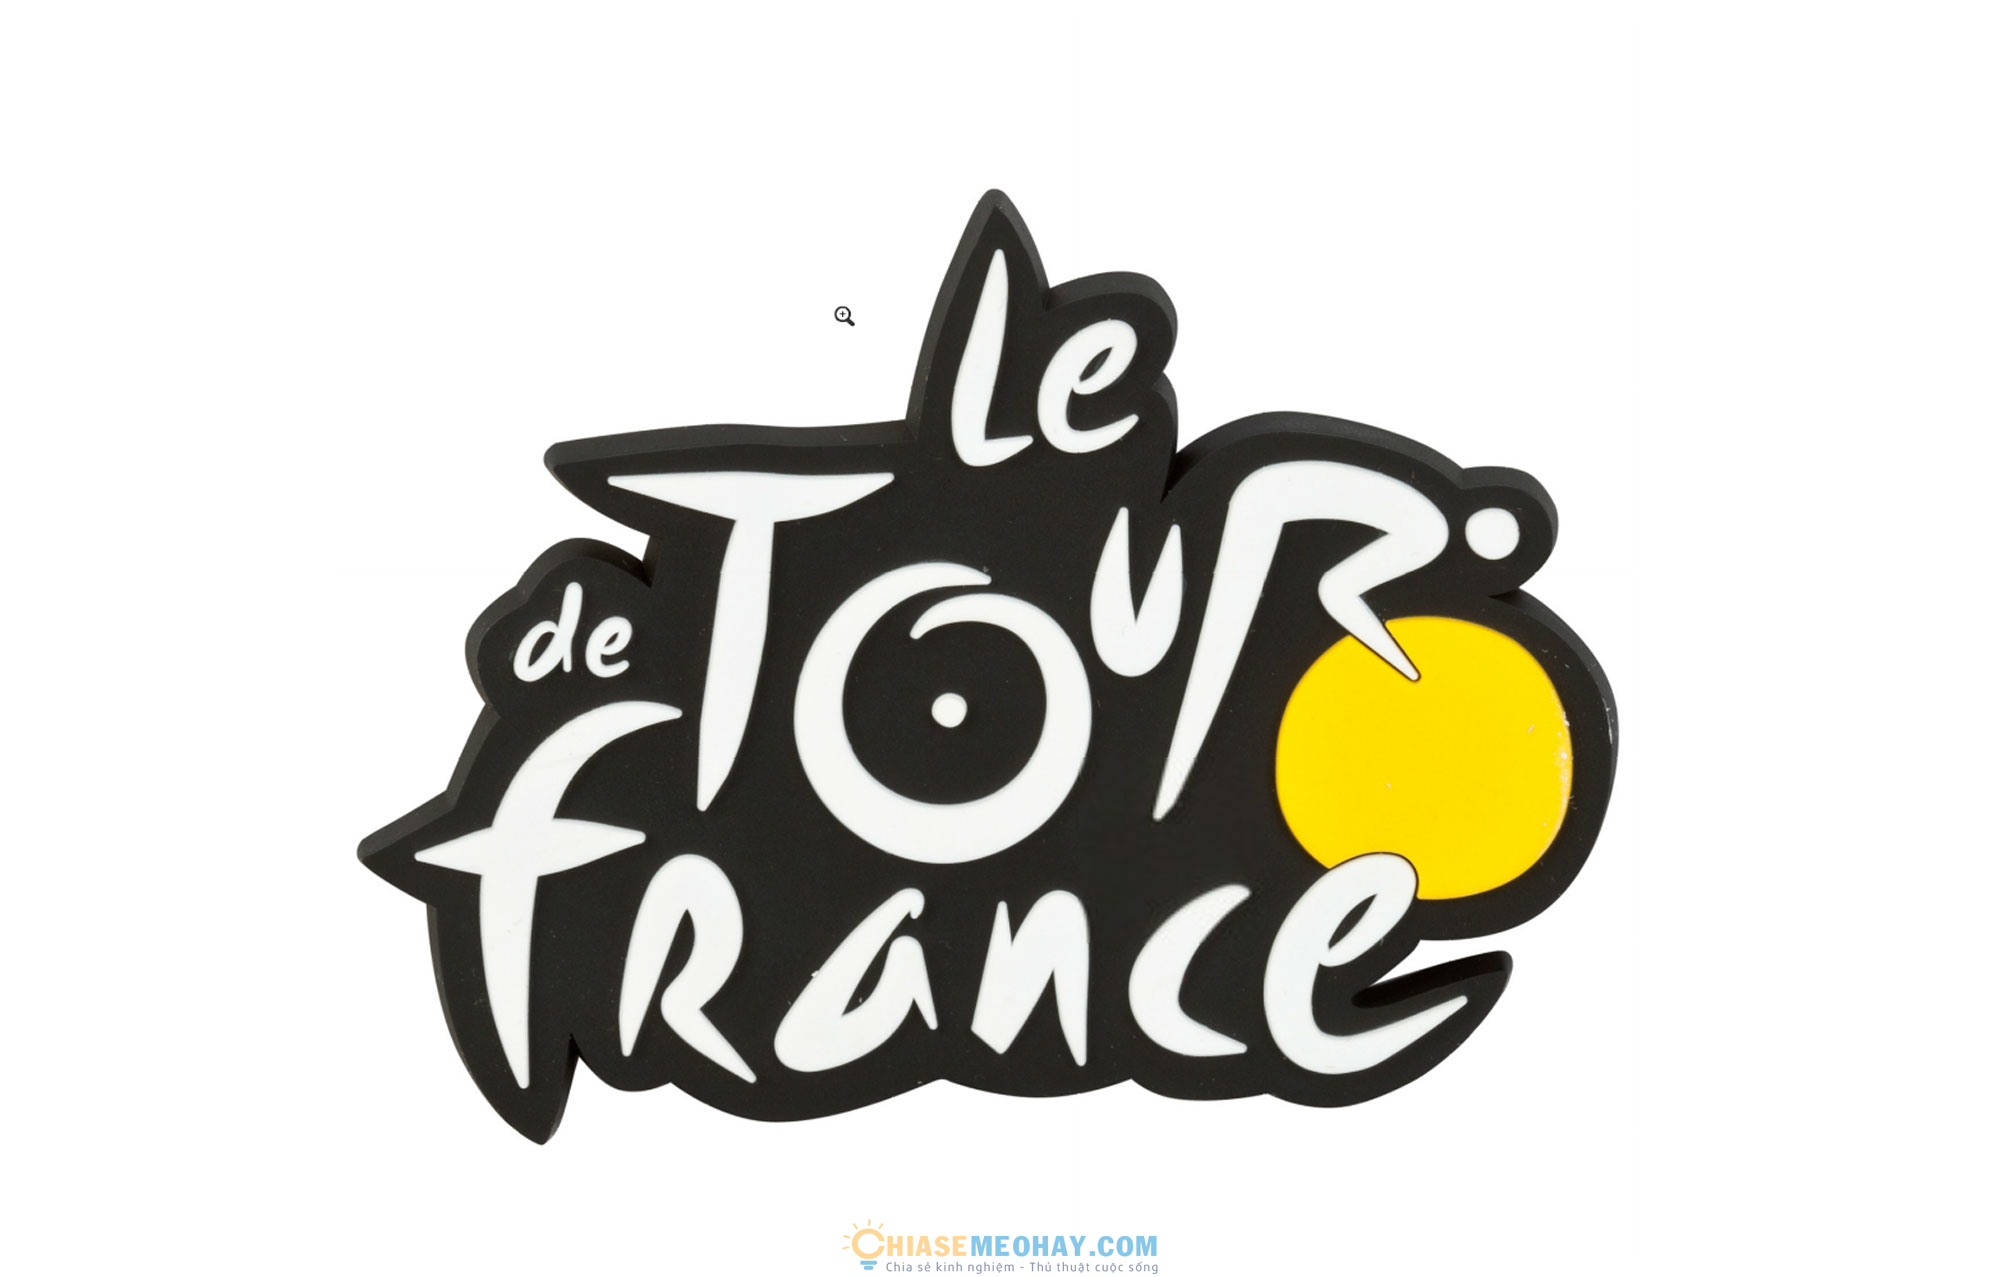 Le de Tour France